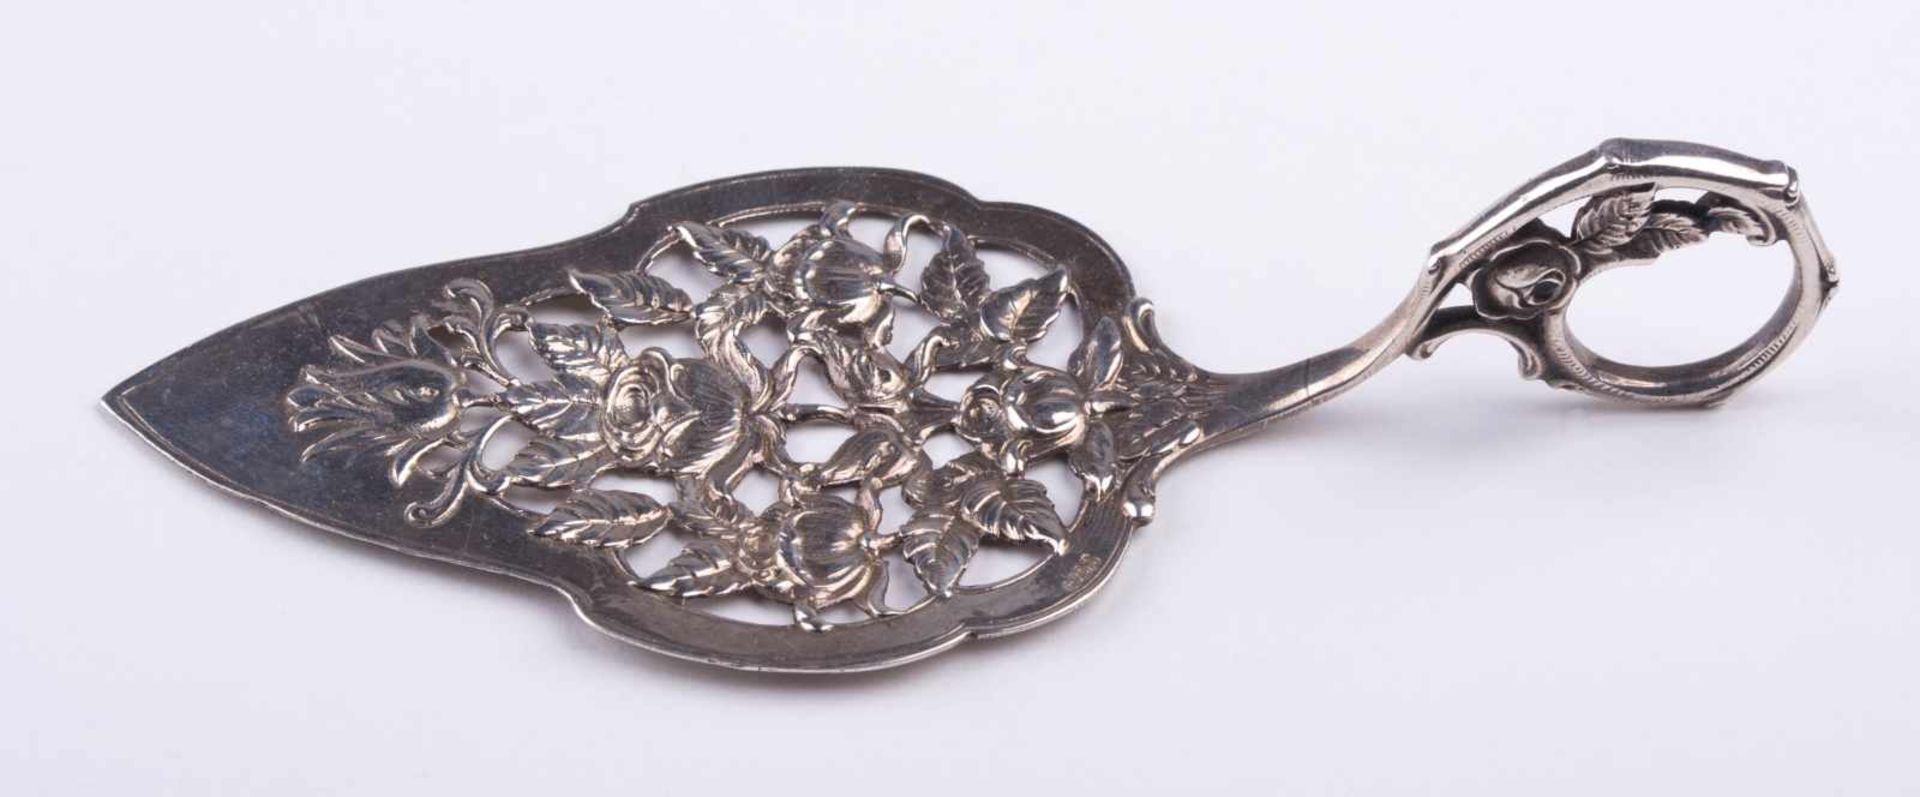 Tortenheber um 1900 / Cake slice, silver about 1900 Silber 830/000, mit floralem Dekor, L: ca. 15